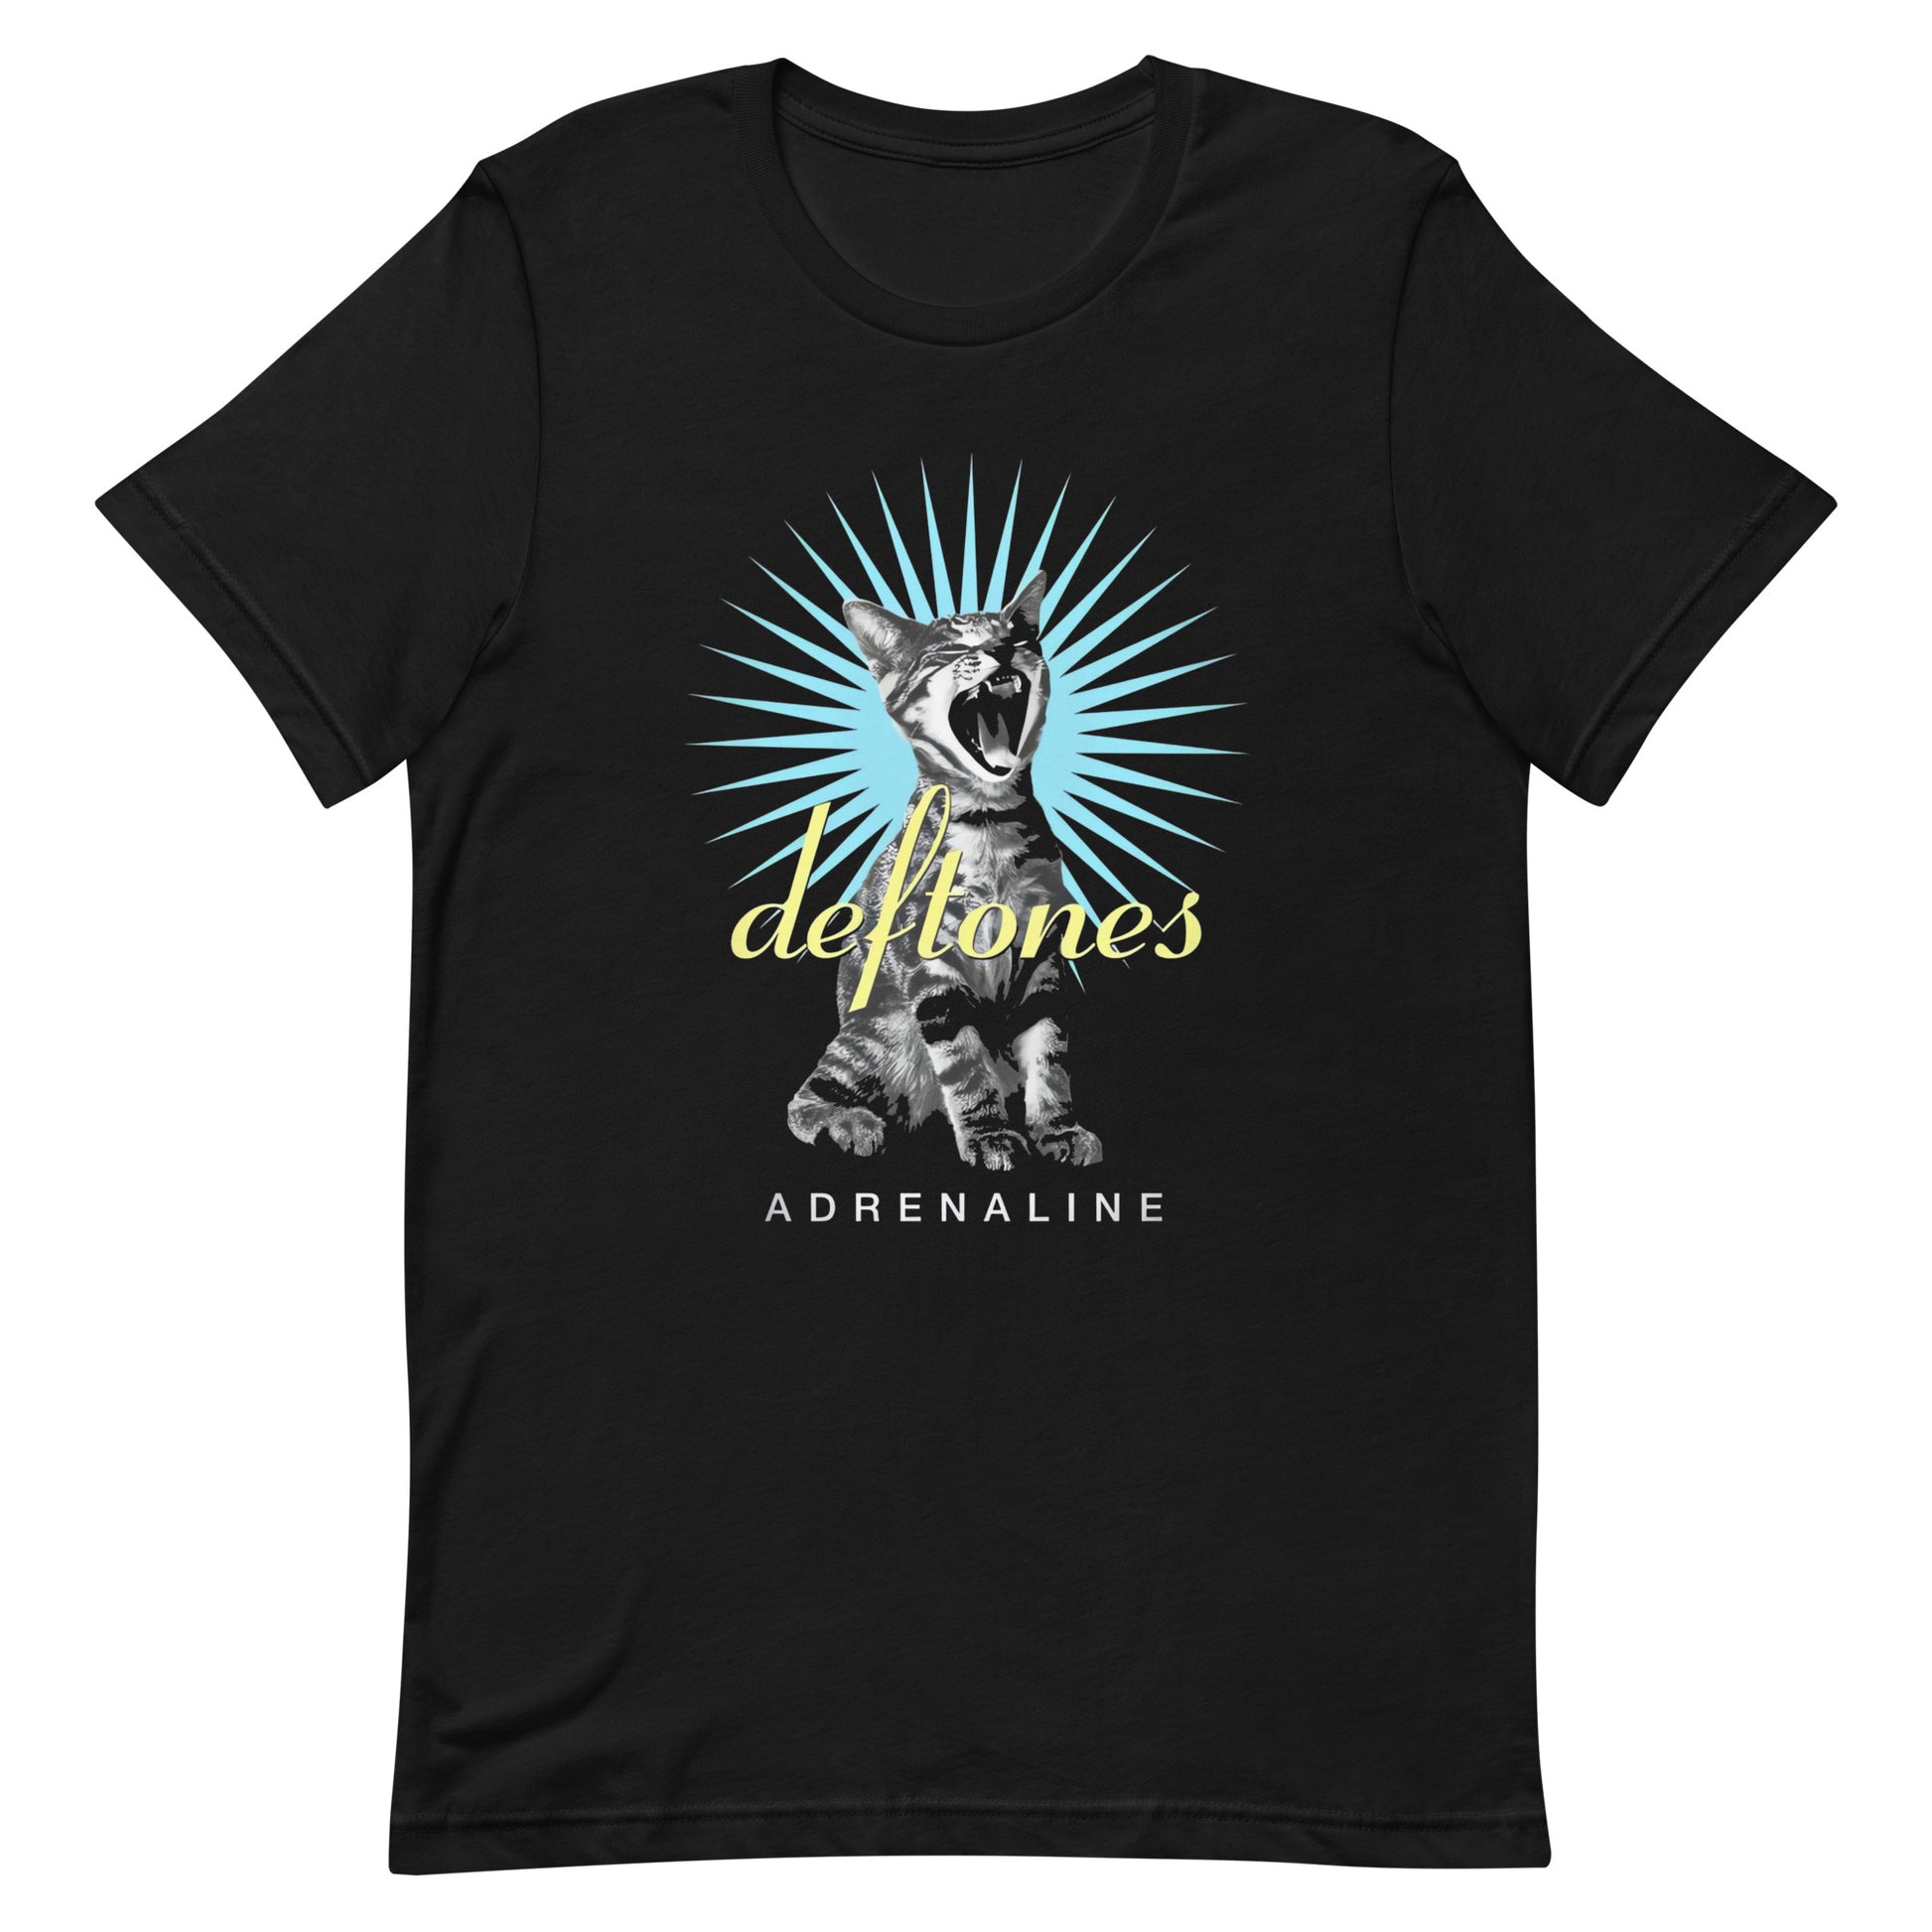 ¡Compra el mejor merchandising en Superstar! Encuentra diseños únicos y de alta calidad en camisetas únicas, Camiseta Deftones Cat